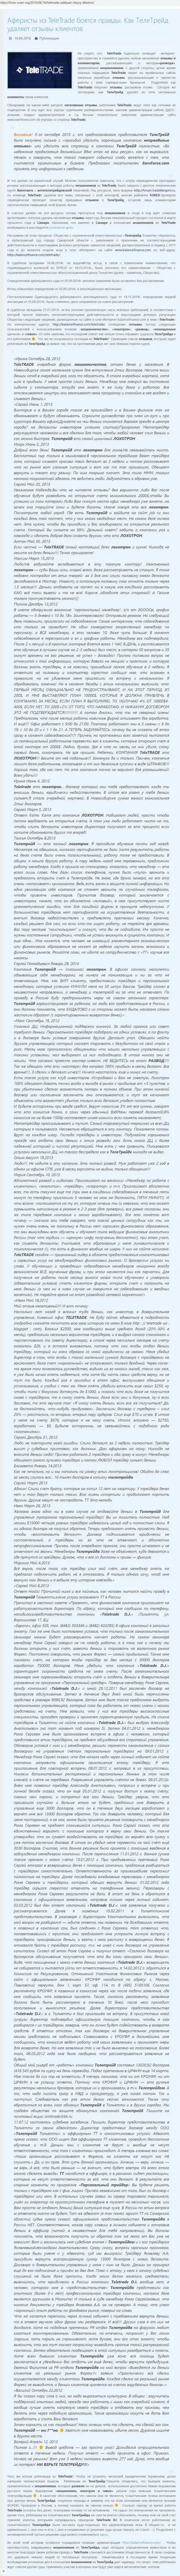 Подтверждение ДДоС-атак в отношении тех, кто говорит правдивую информацию о лохотронщиках TeleTrade Ru